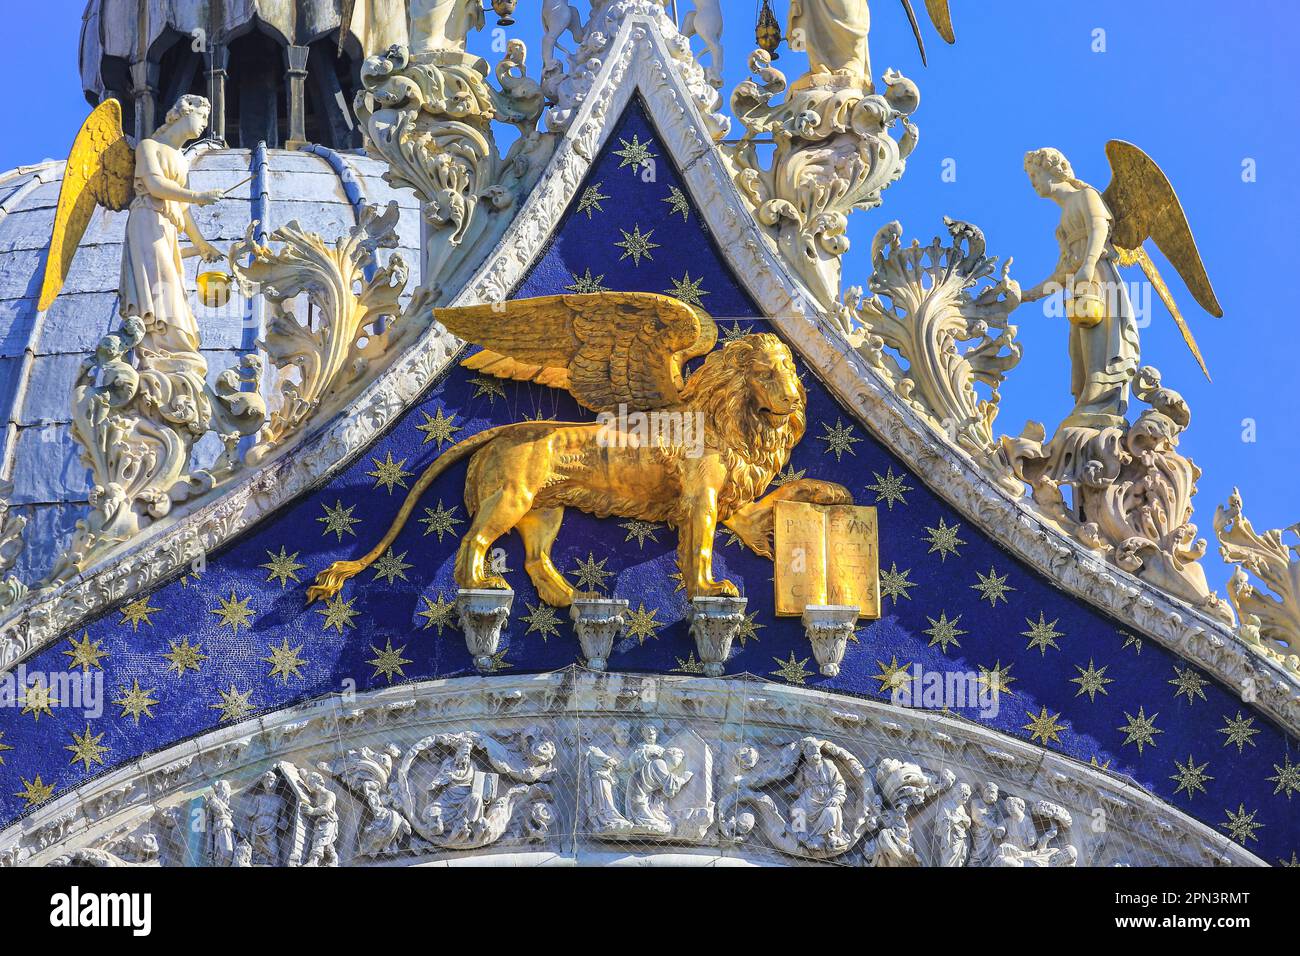 Basilica di San Marco Venezia, particolare del leone dorato, mosaici e statue d'angelo sul tetto, chiesa attaccata al Palazzo Ducale, Venezia, Italia, Europa Foto Stock